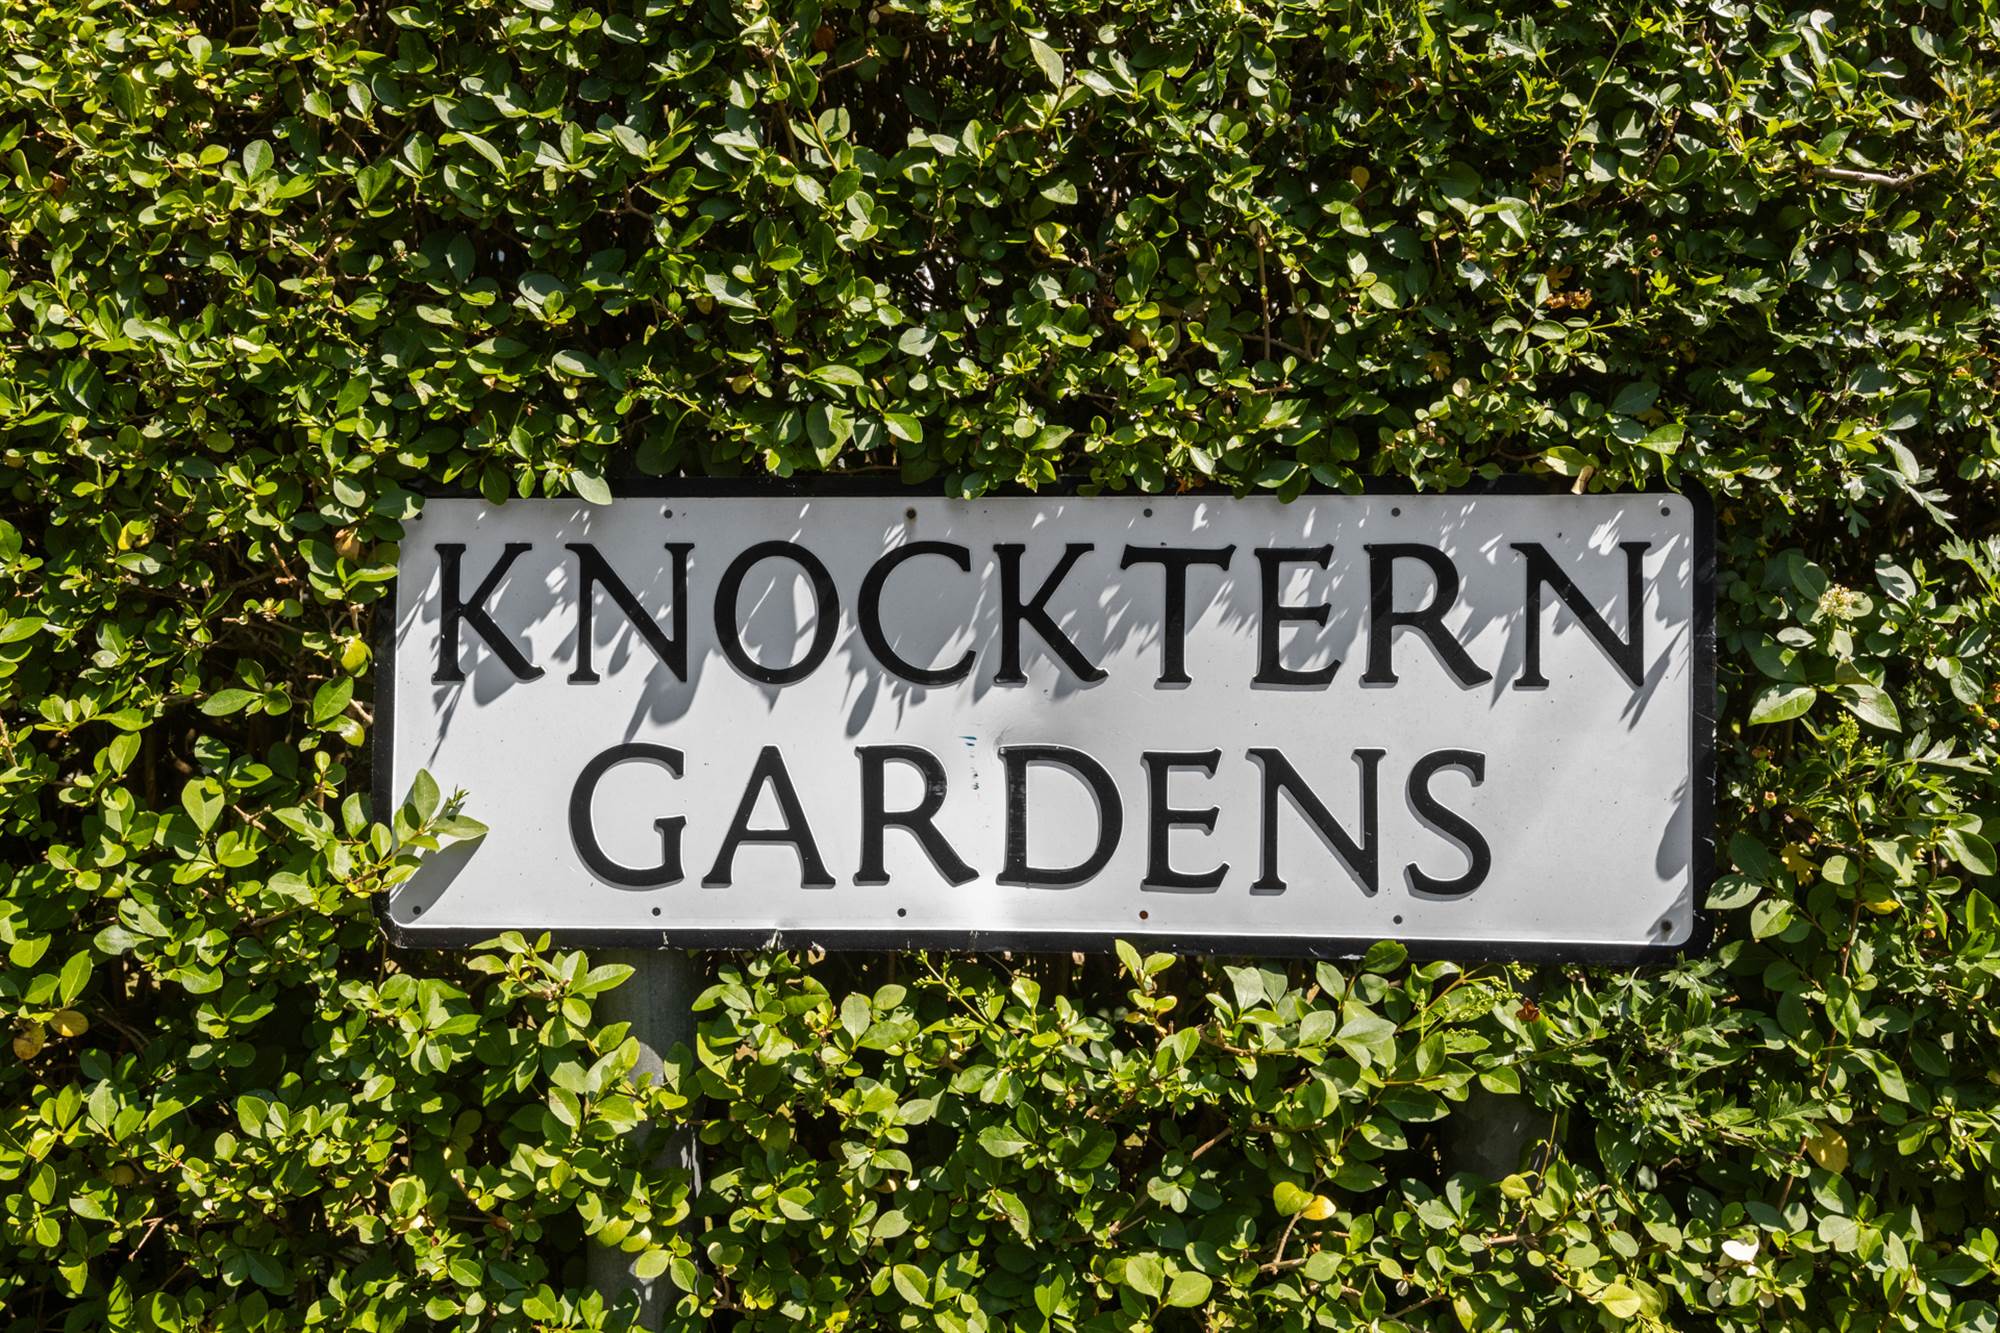 1 Knocktern Gardens